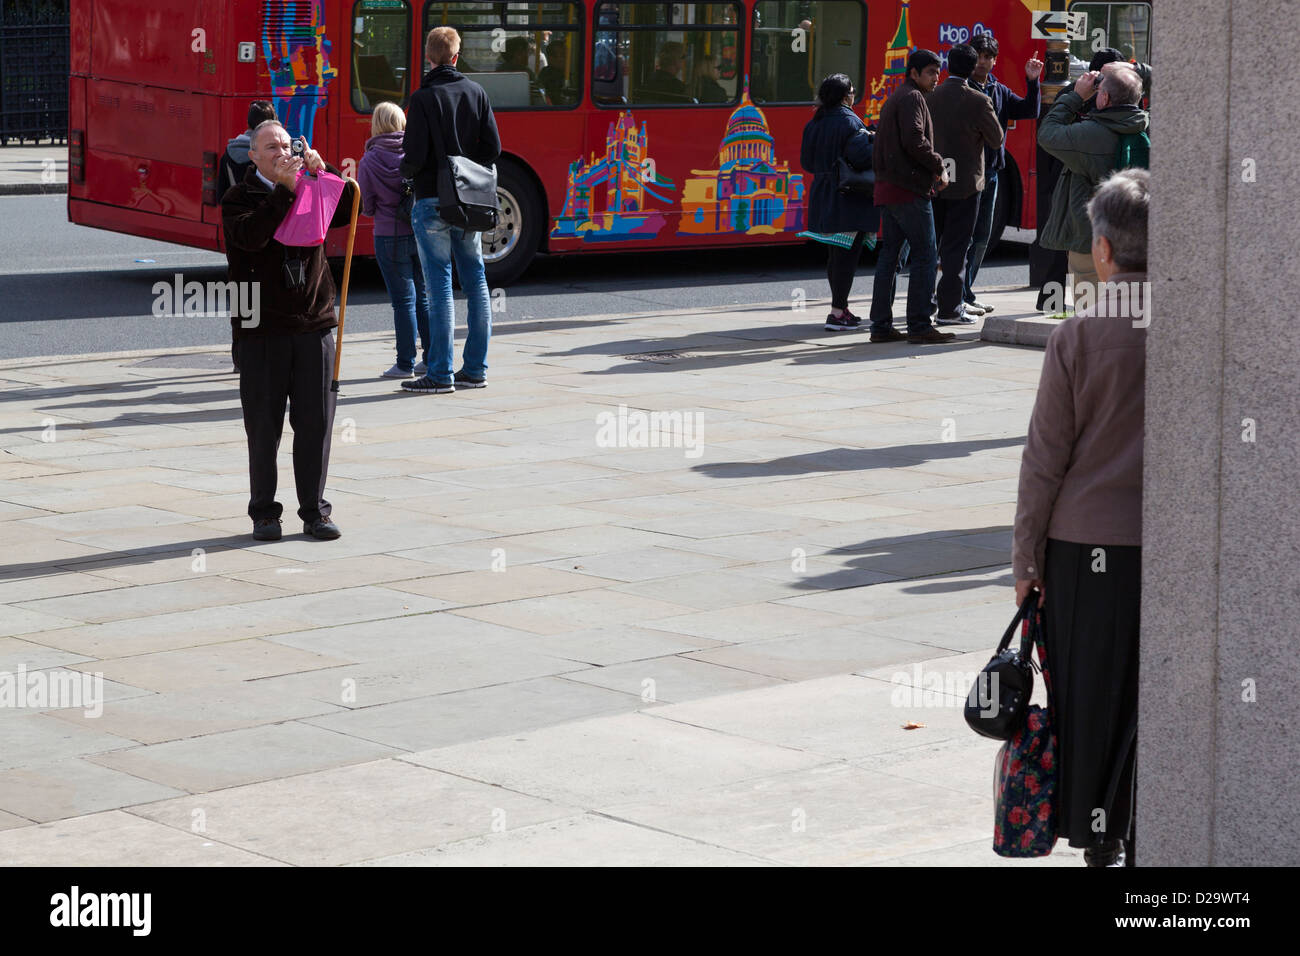 Un homme prend une photo d'une dame de la place du Parlement, Londres. Banque D'Images